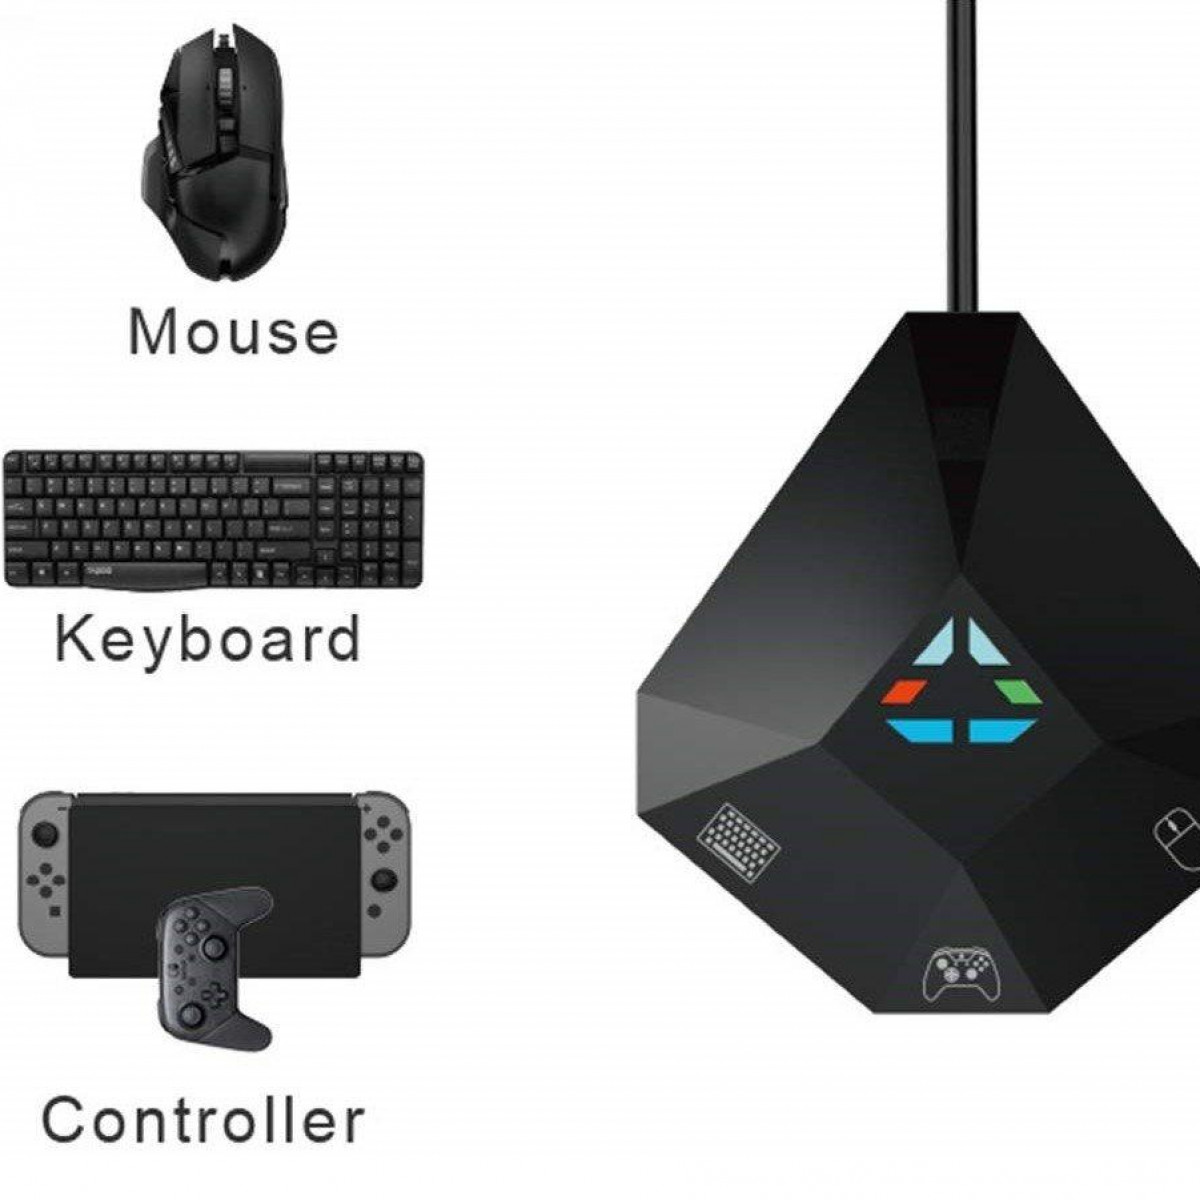 Tastatur/Maus Adapter Tastatur/Maus Adapter PS3 Xbox für One/360, PS4, N-Switch, INF